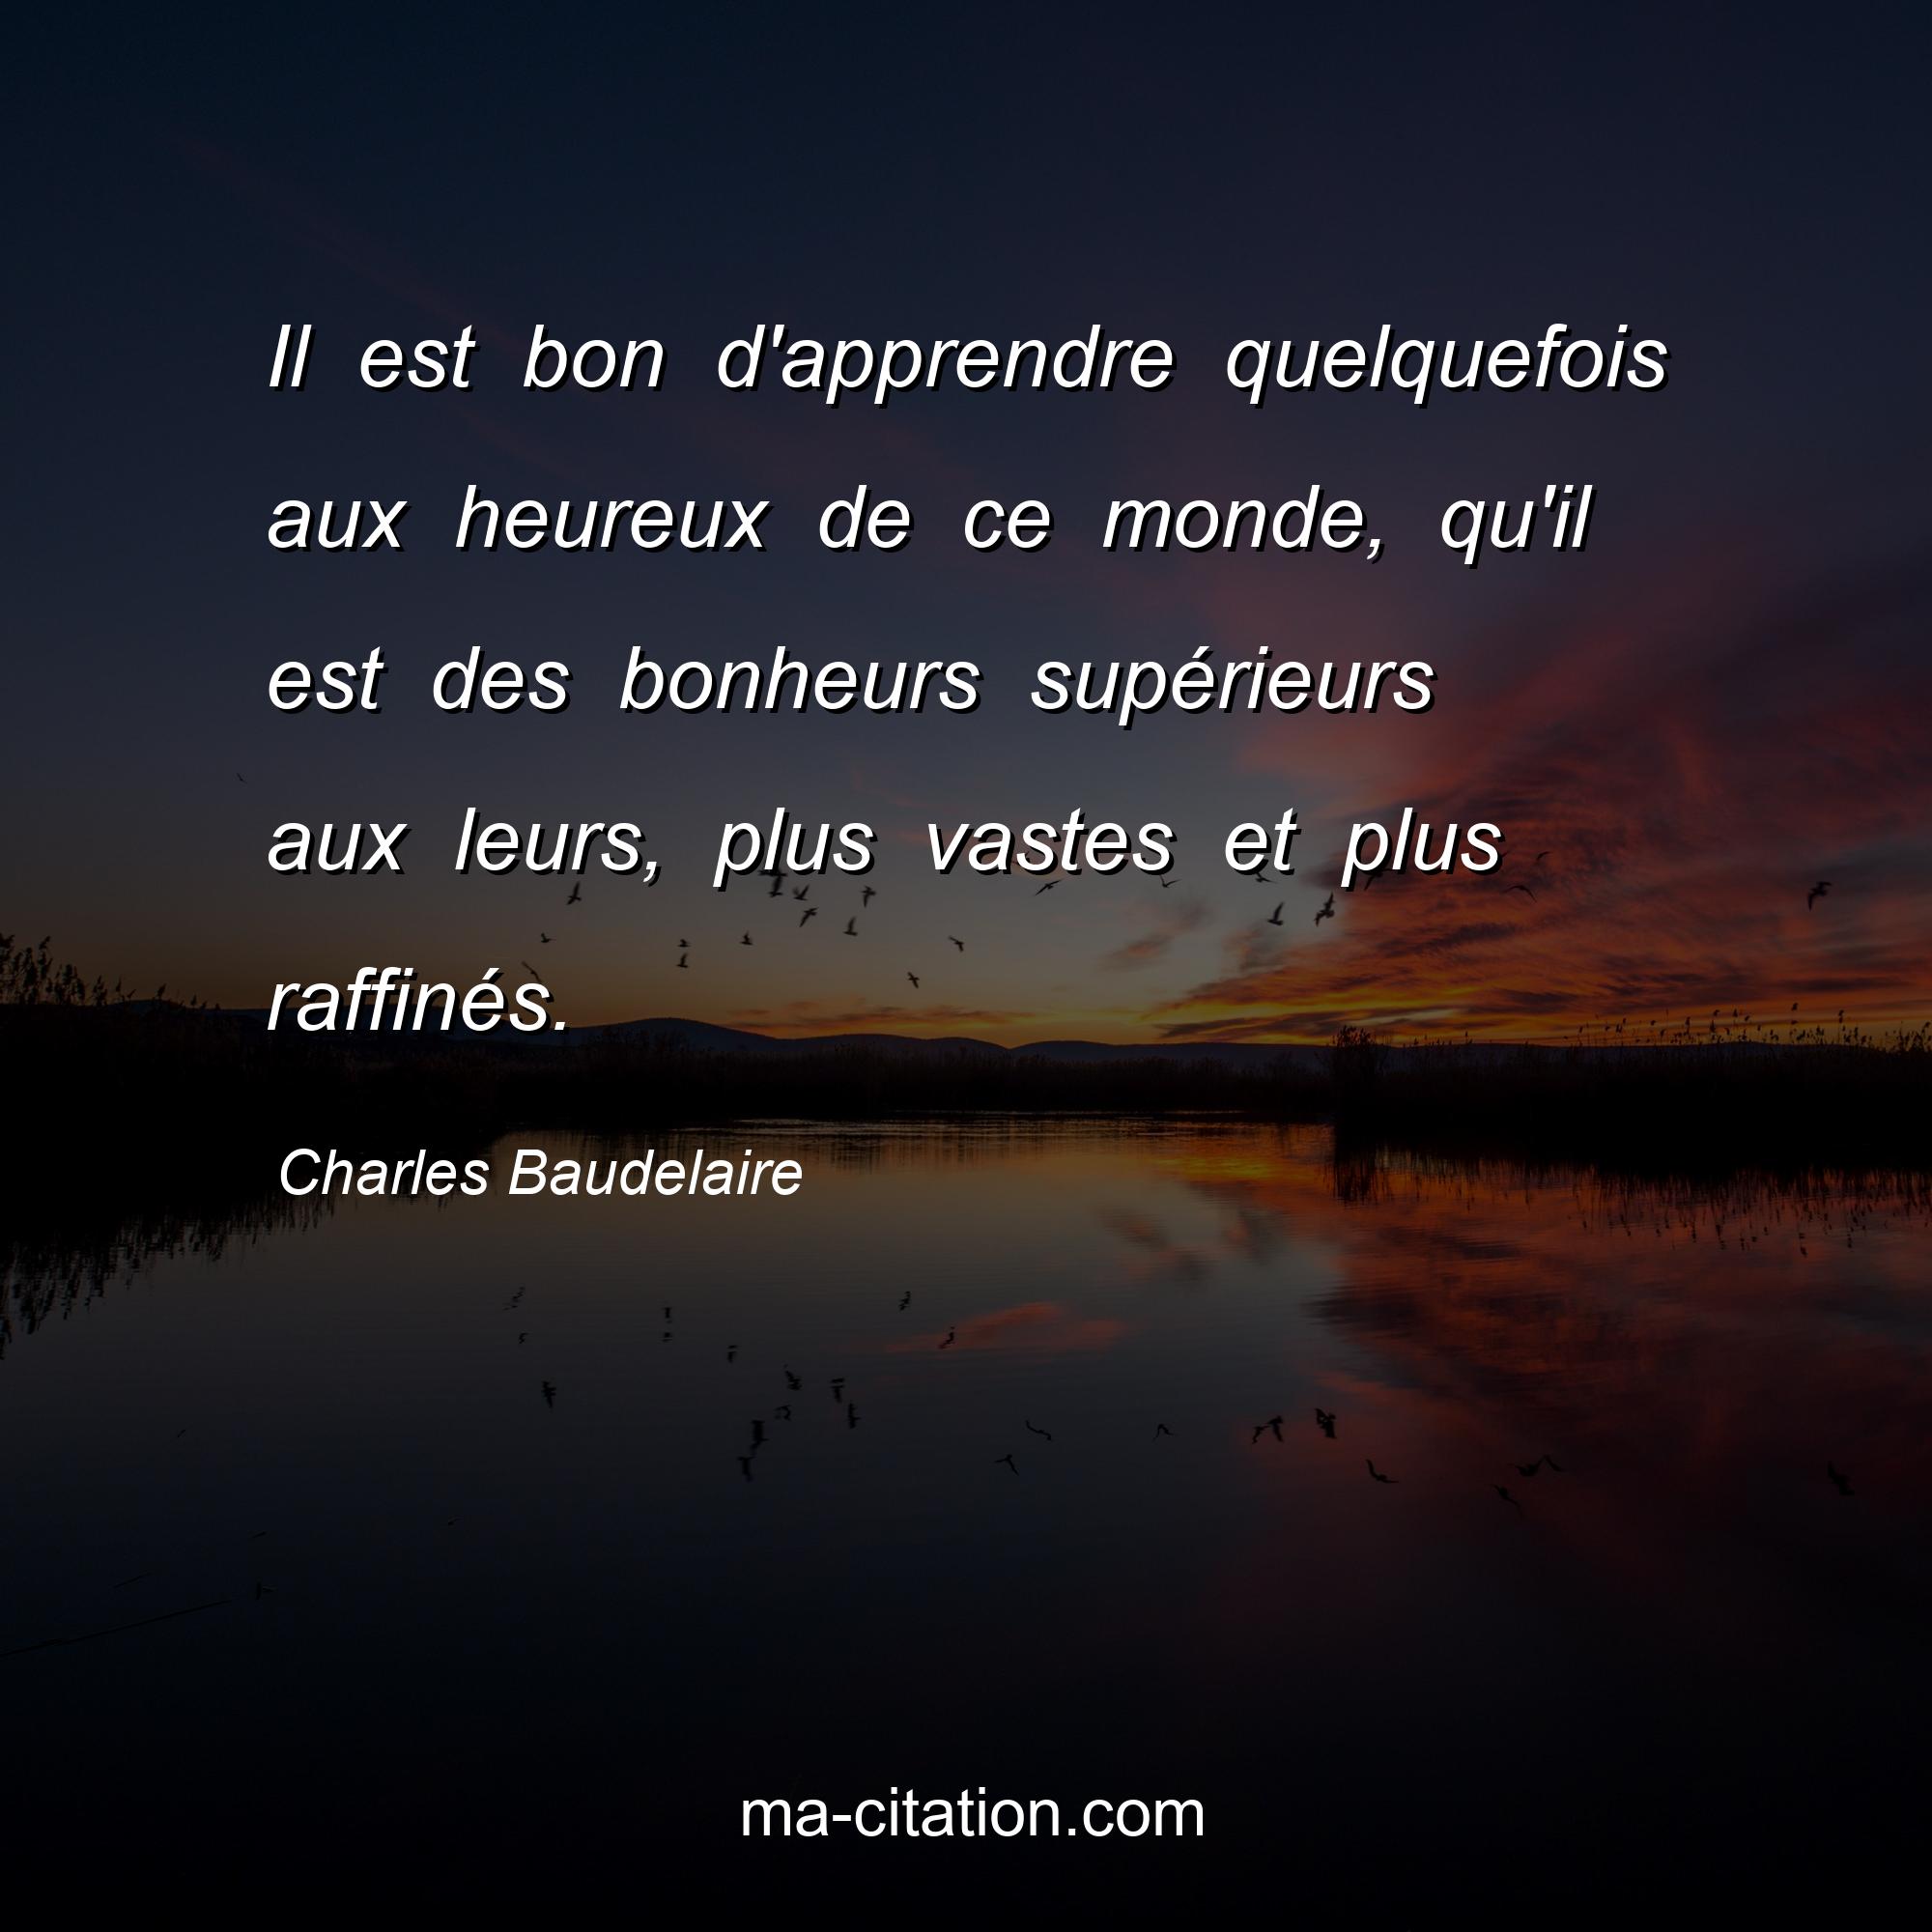 Charles Baudelaire : Il est bon d'apprendre quelquefois aux heureux de ce monde, qu'il est des bonheurs supérieurs aux leurs, plus vastes et plus raffinés.